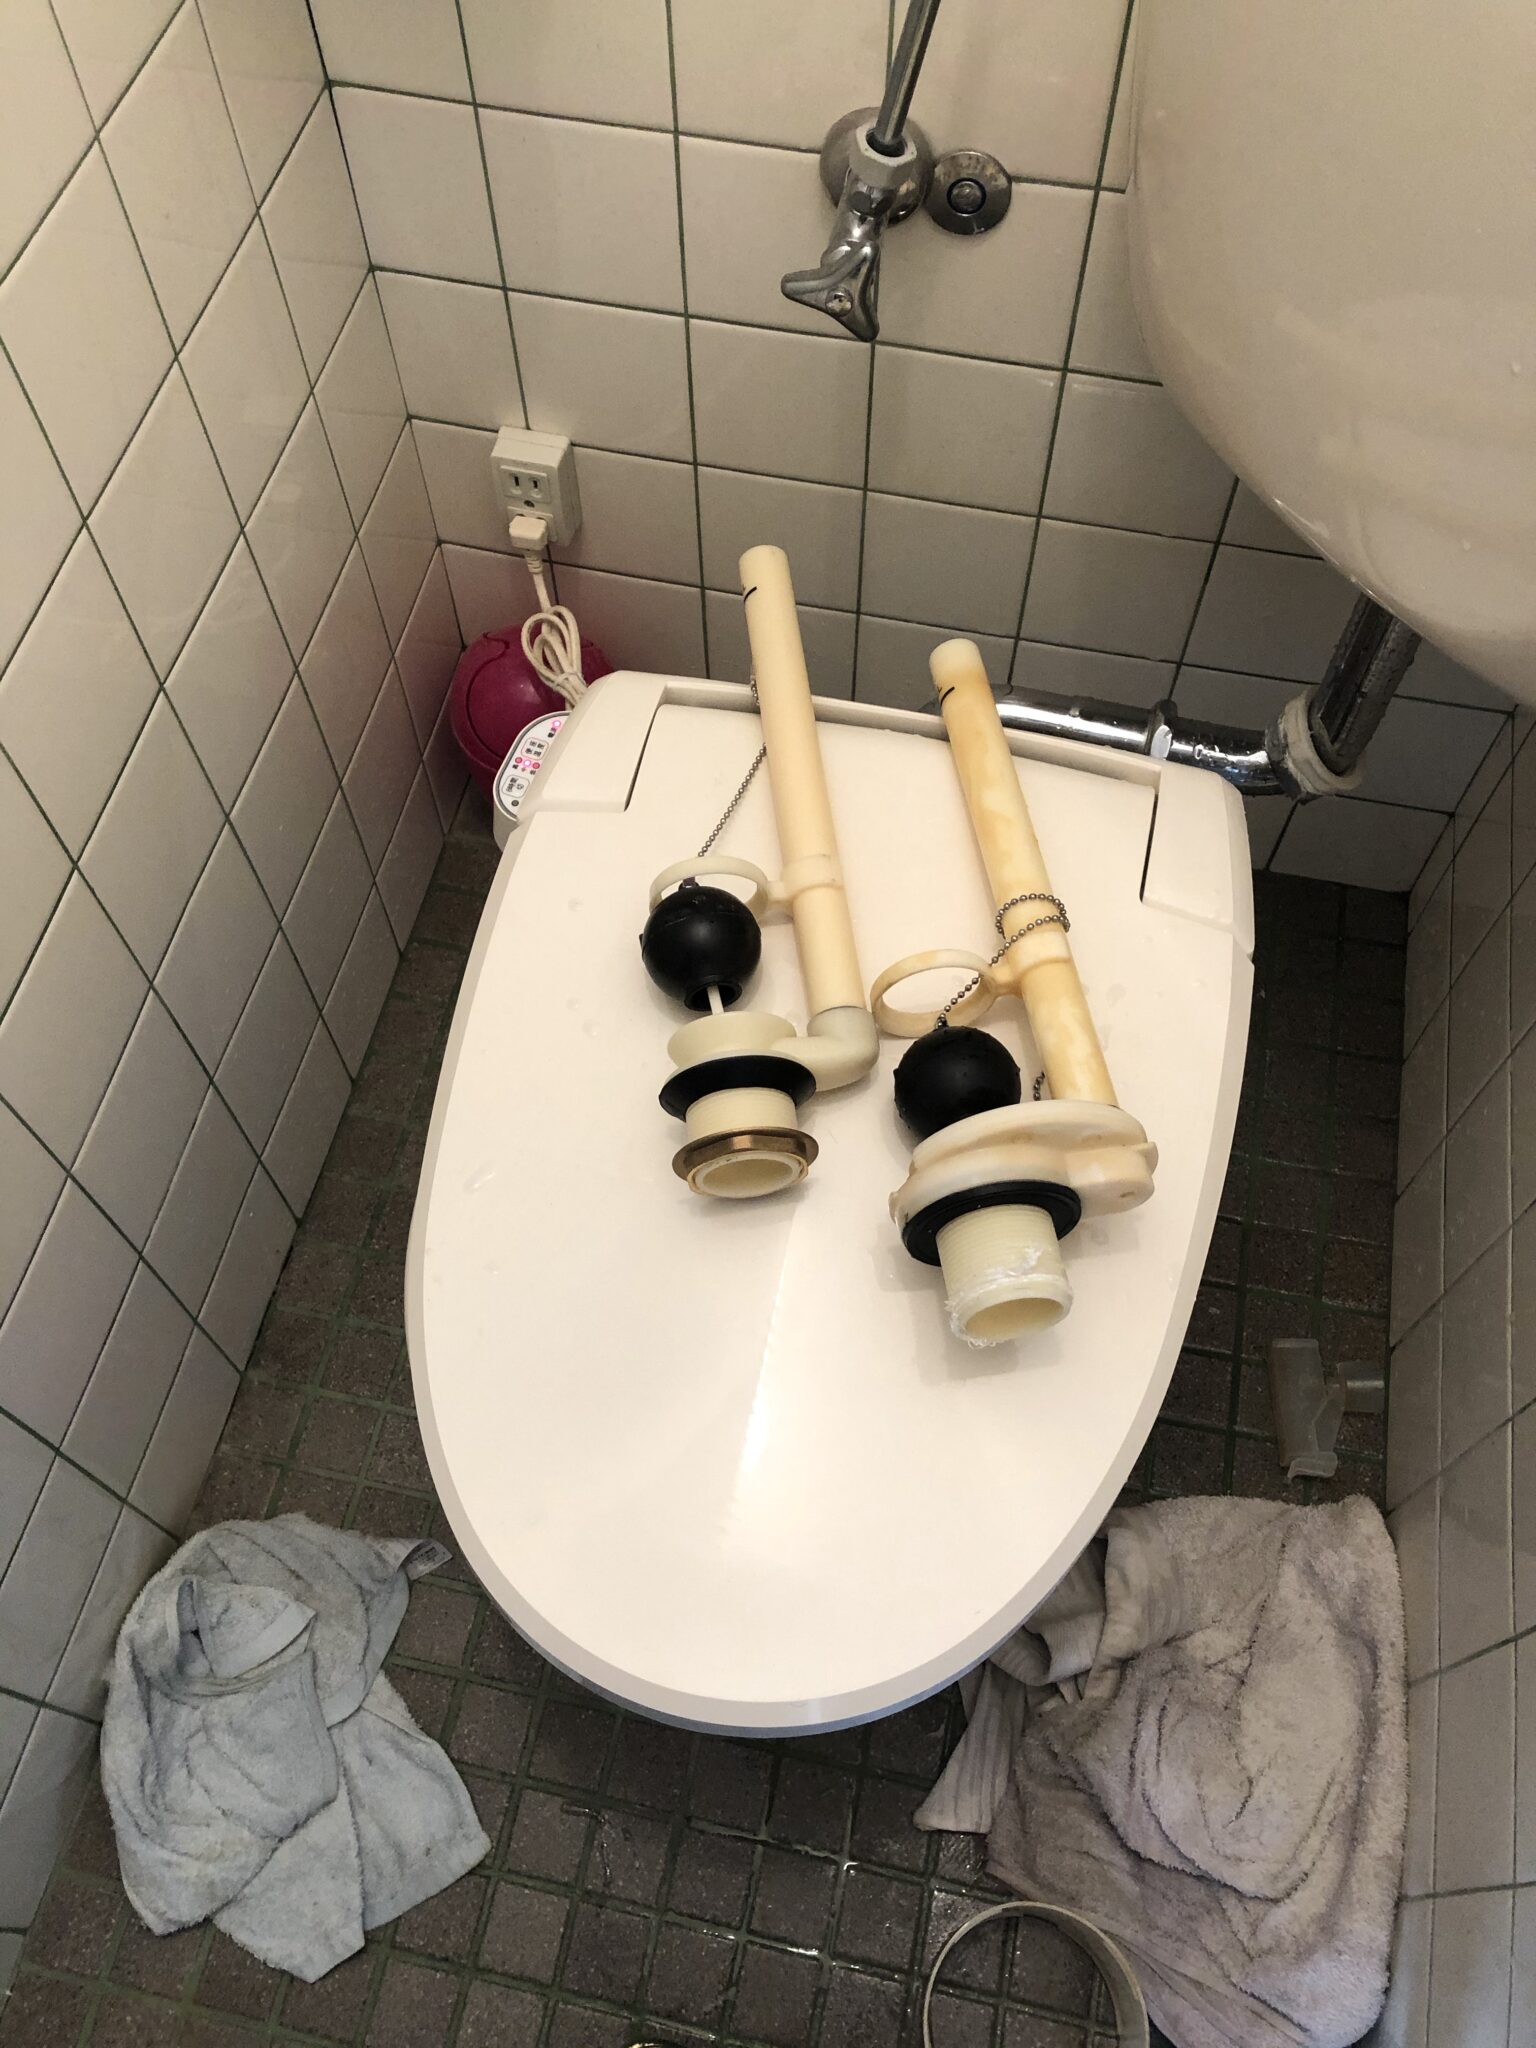 トイレ水漏れ 床が濡れている 京都市左京区 水もれドルフィン